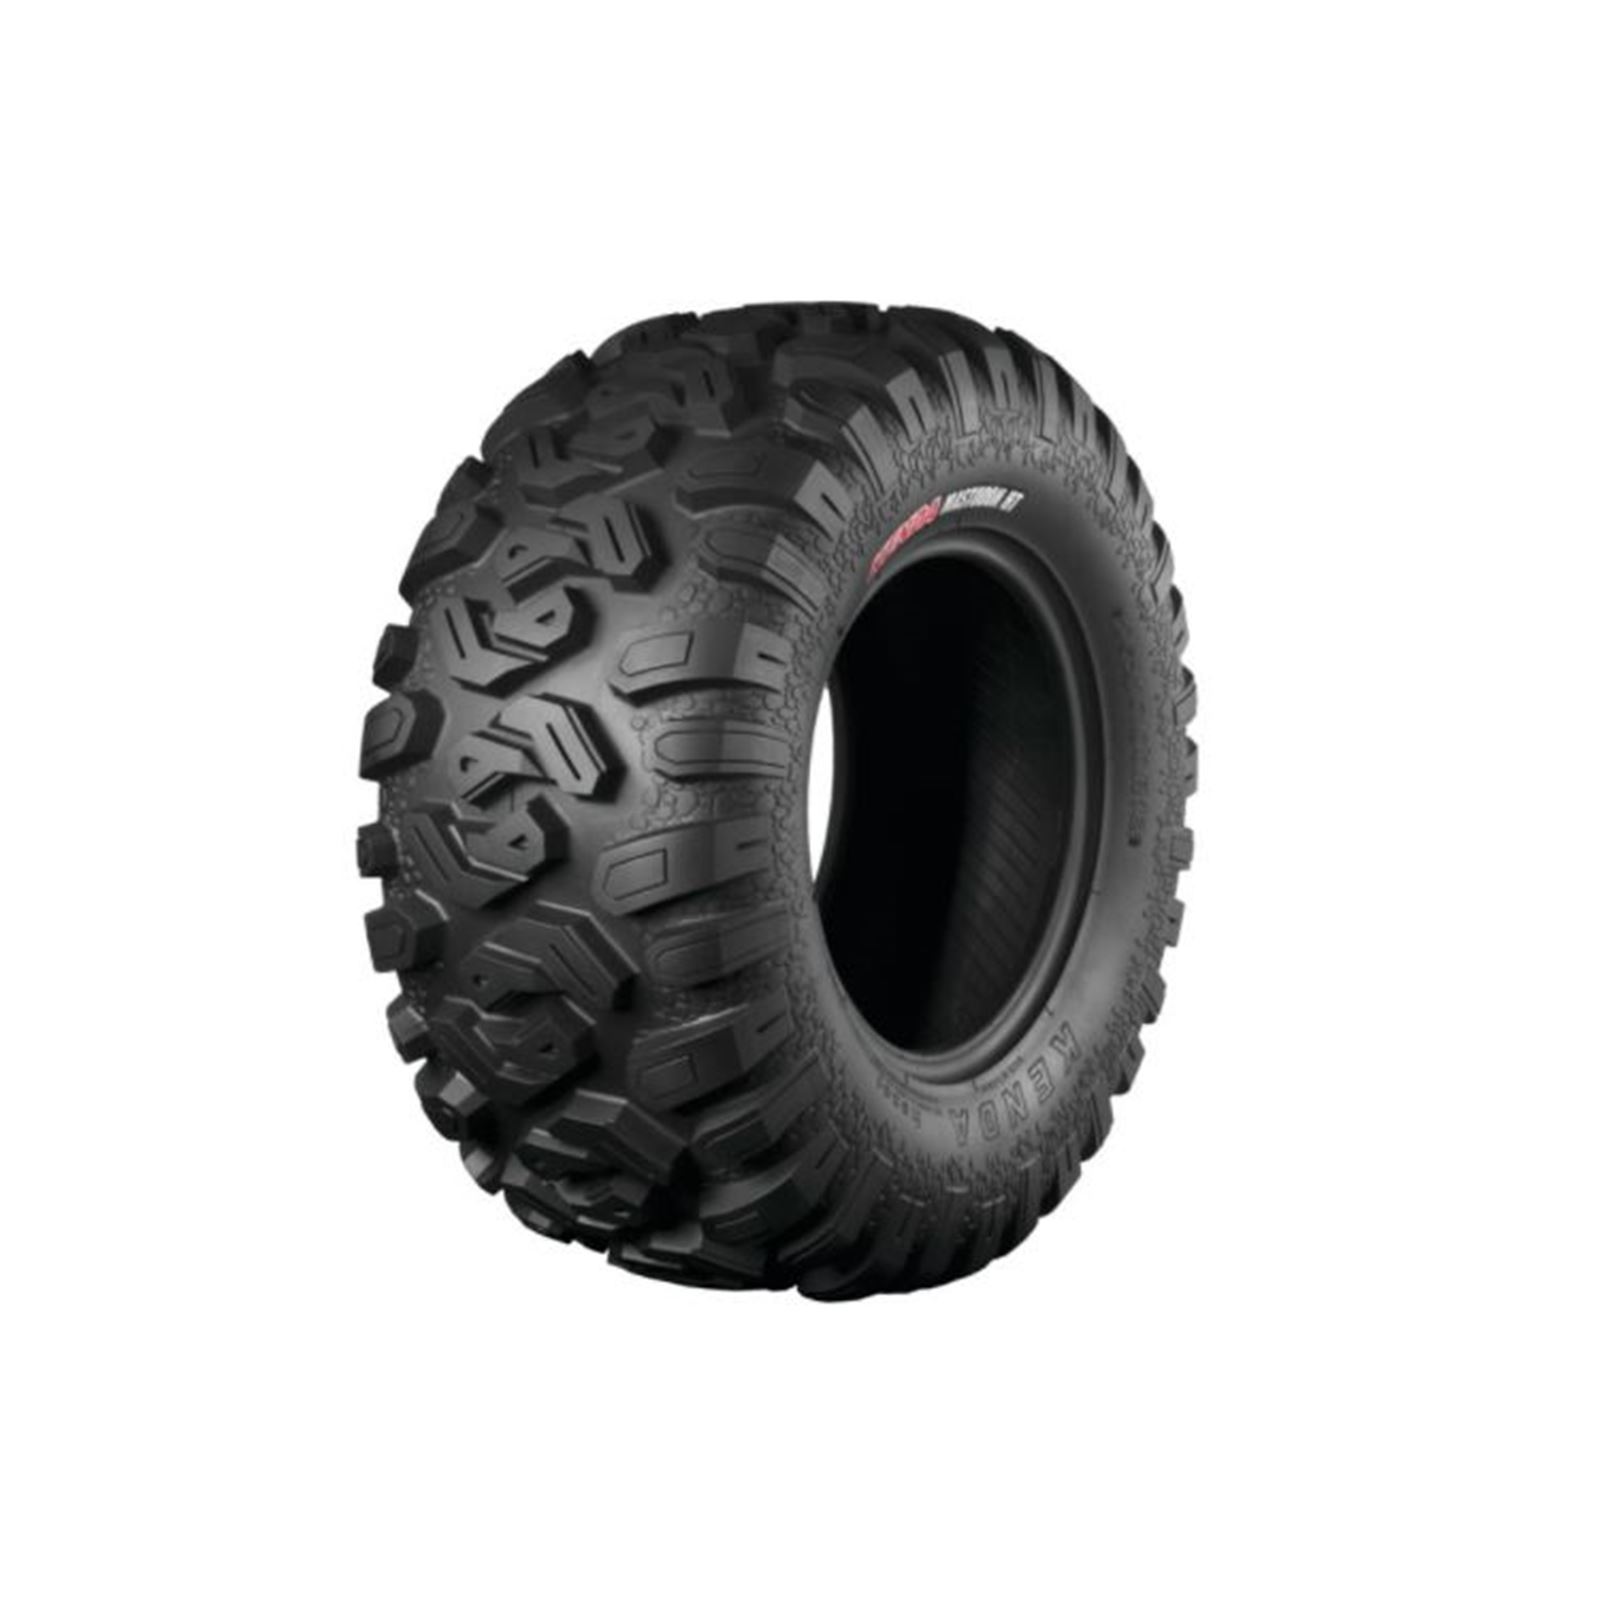 Kenda Mastodon HT K3201 Radial Tire 32x10-14, Radial, Front/Rear